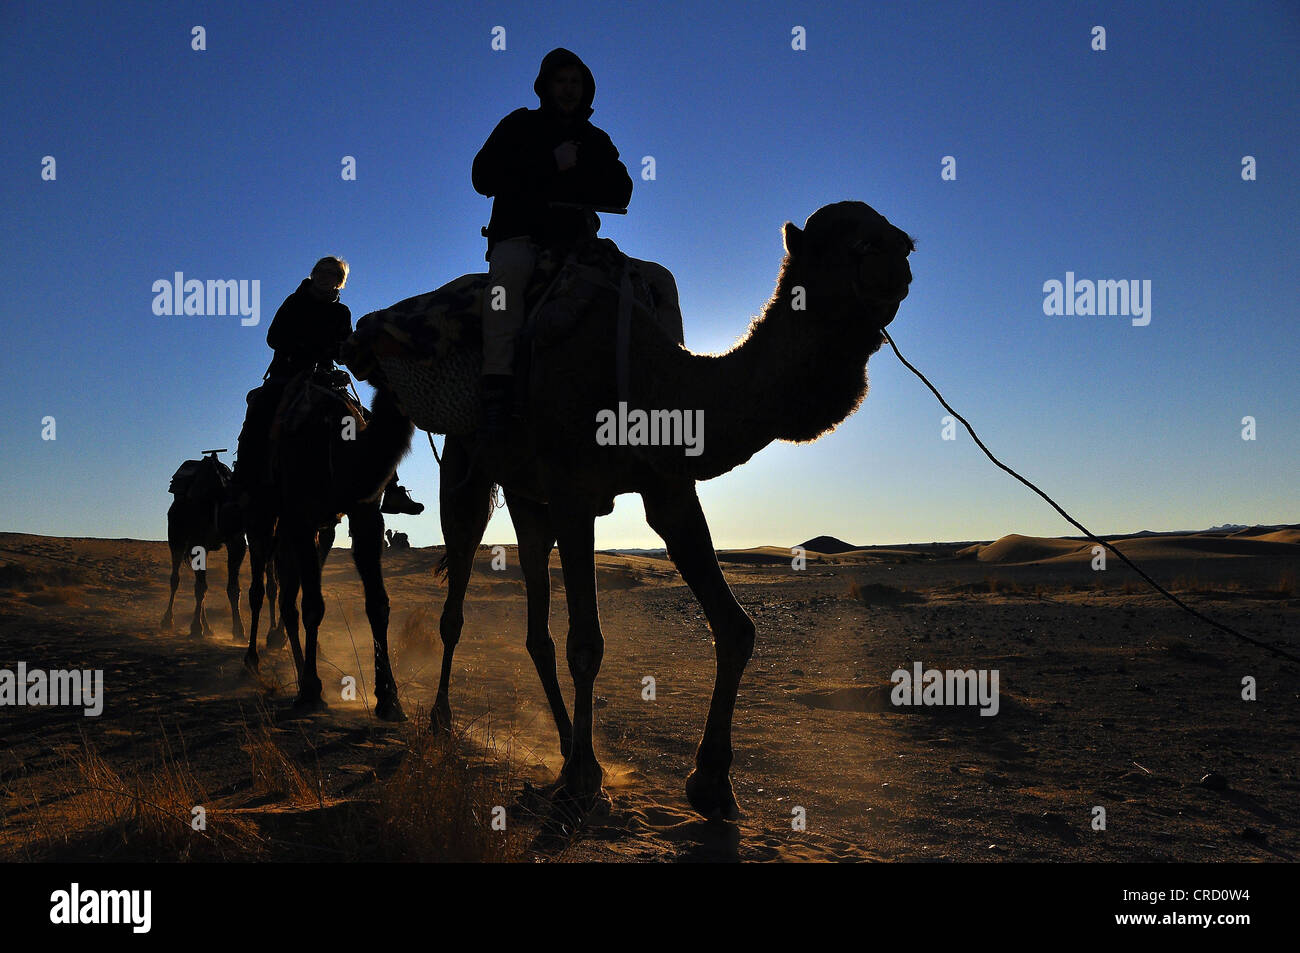 Caravane de chameaux dans le désert, le Sahara, l'Egypte, l'Afrique Banque D'Images